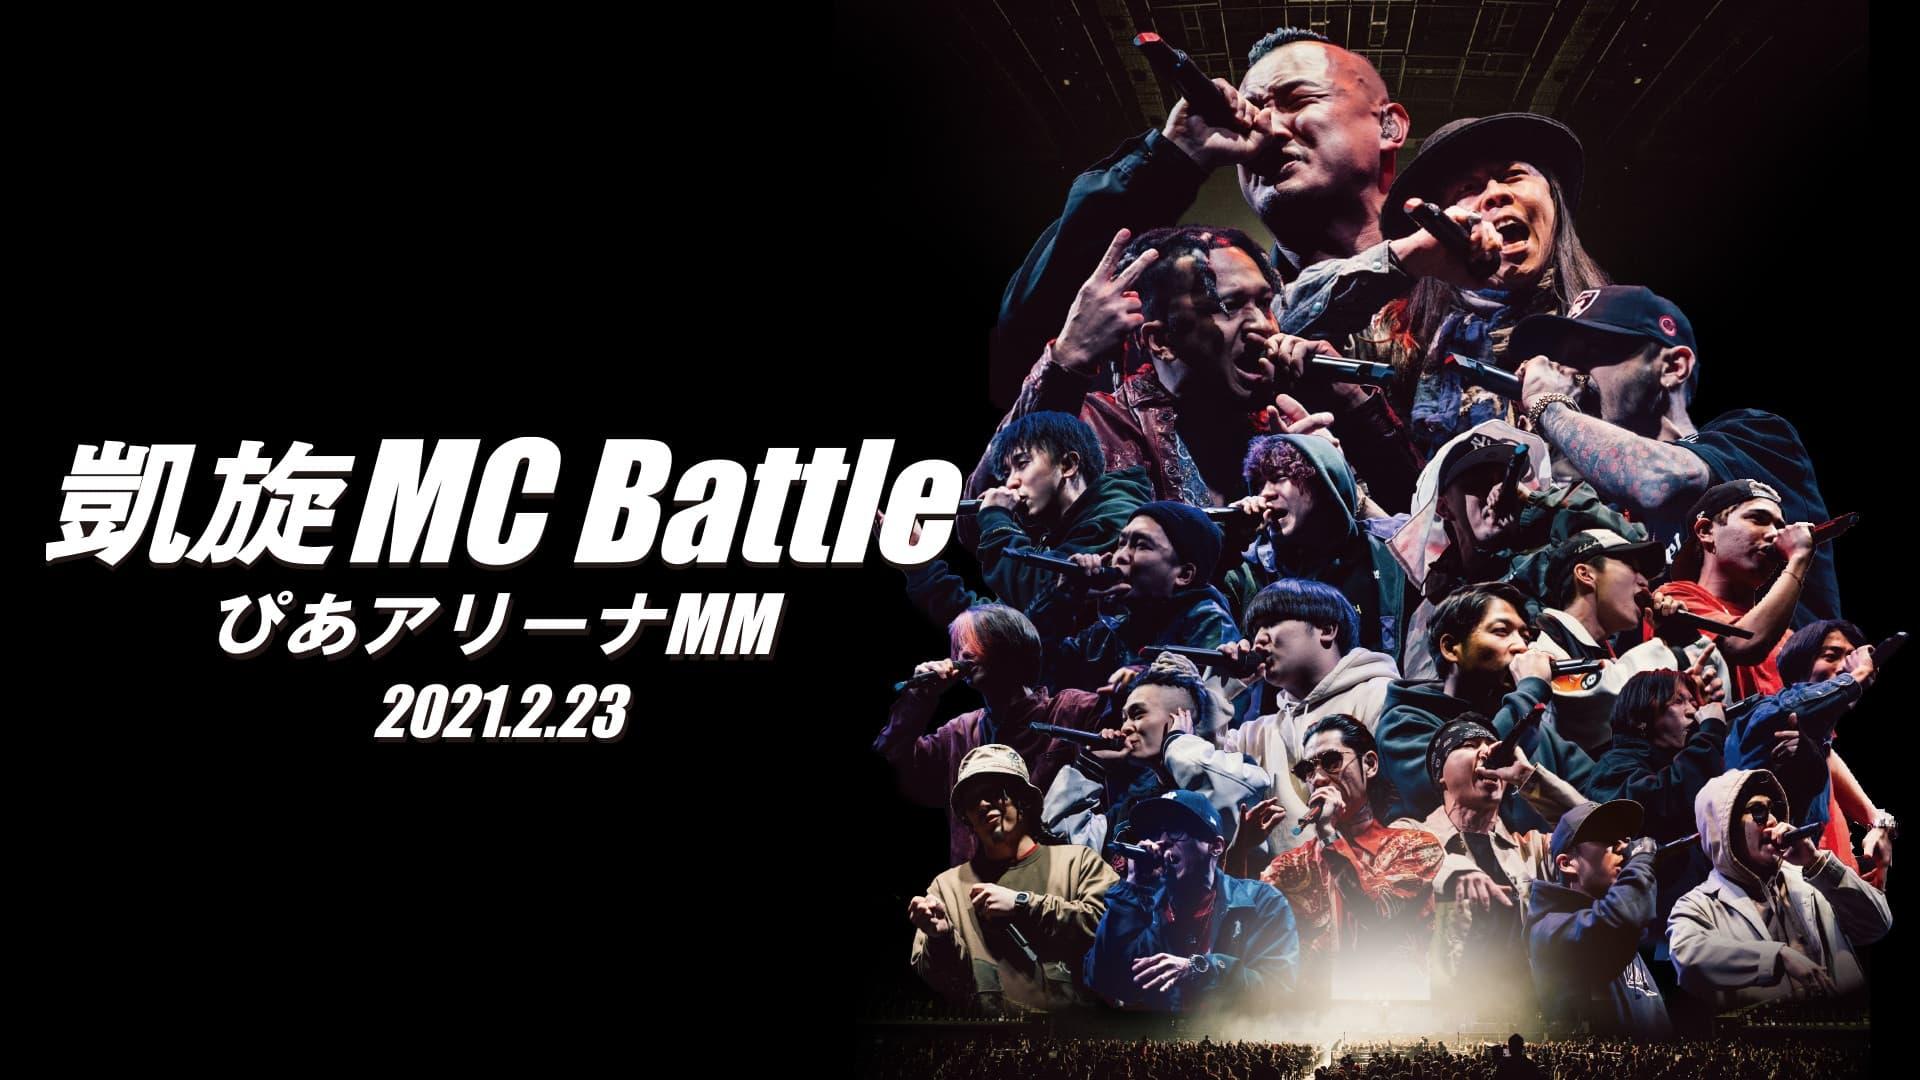 凱旋MC Battle Special アリーナノ陣 at ぴあアリーナMM backdrop